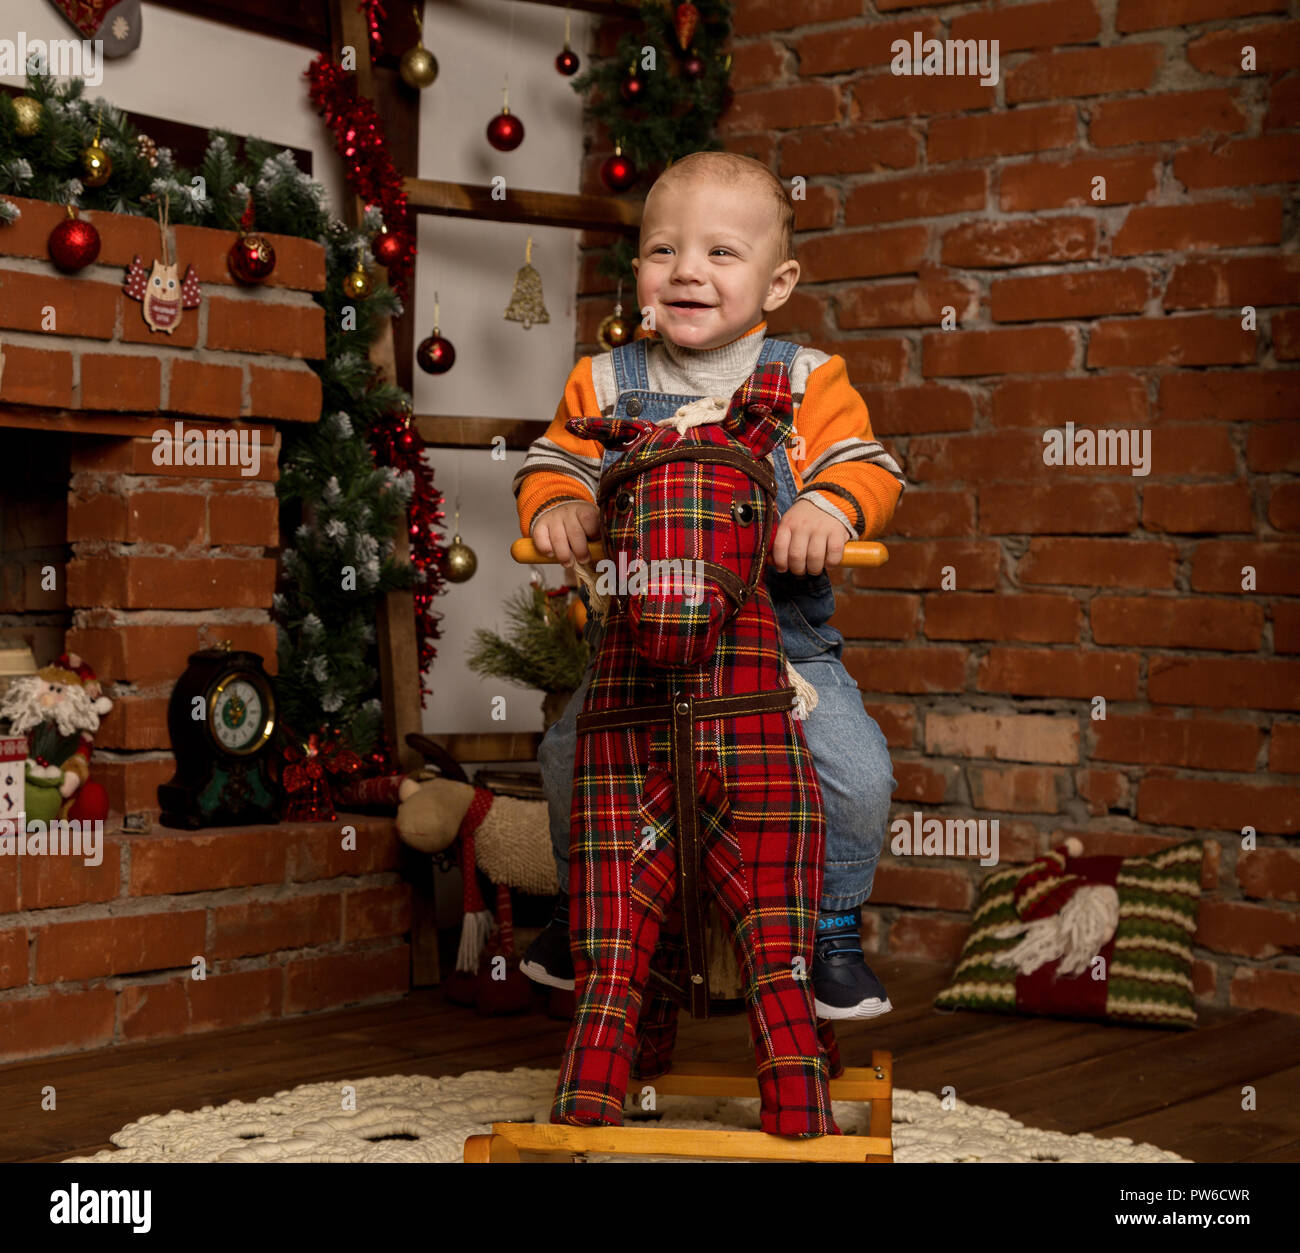 Kleines Baby auf Schaukelpferd, in Pullover und Jeans gekleidet. Weihnachten  und neues Jahr Dekorationen Stockfotografie - Alamy